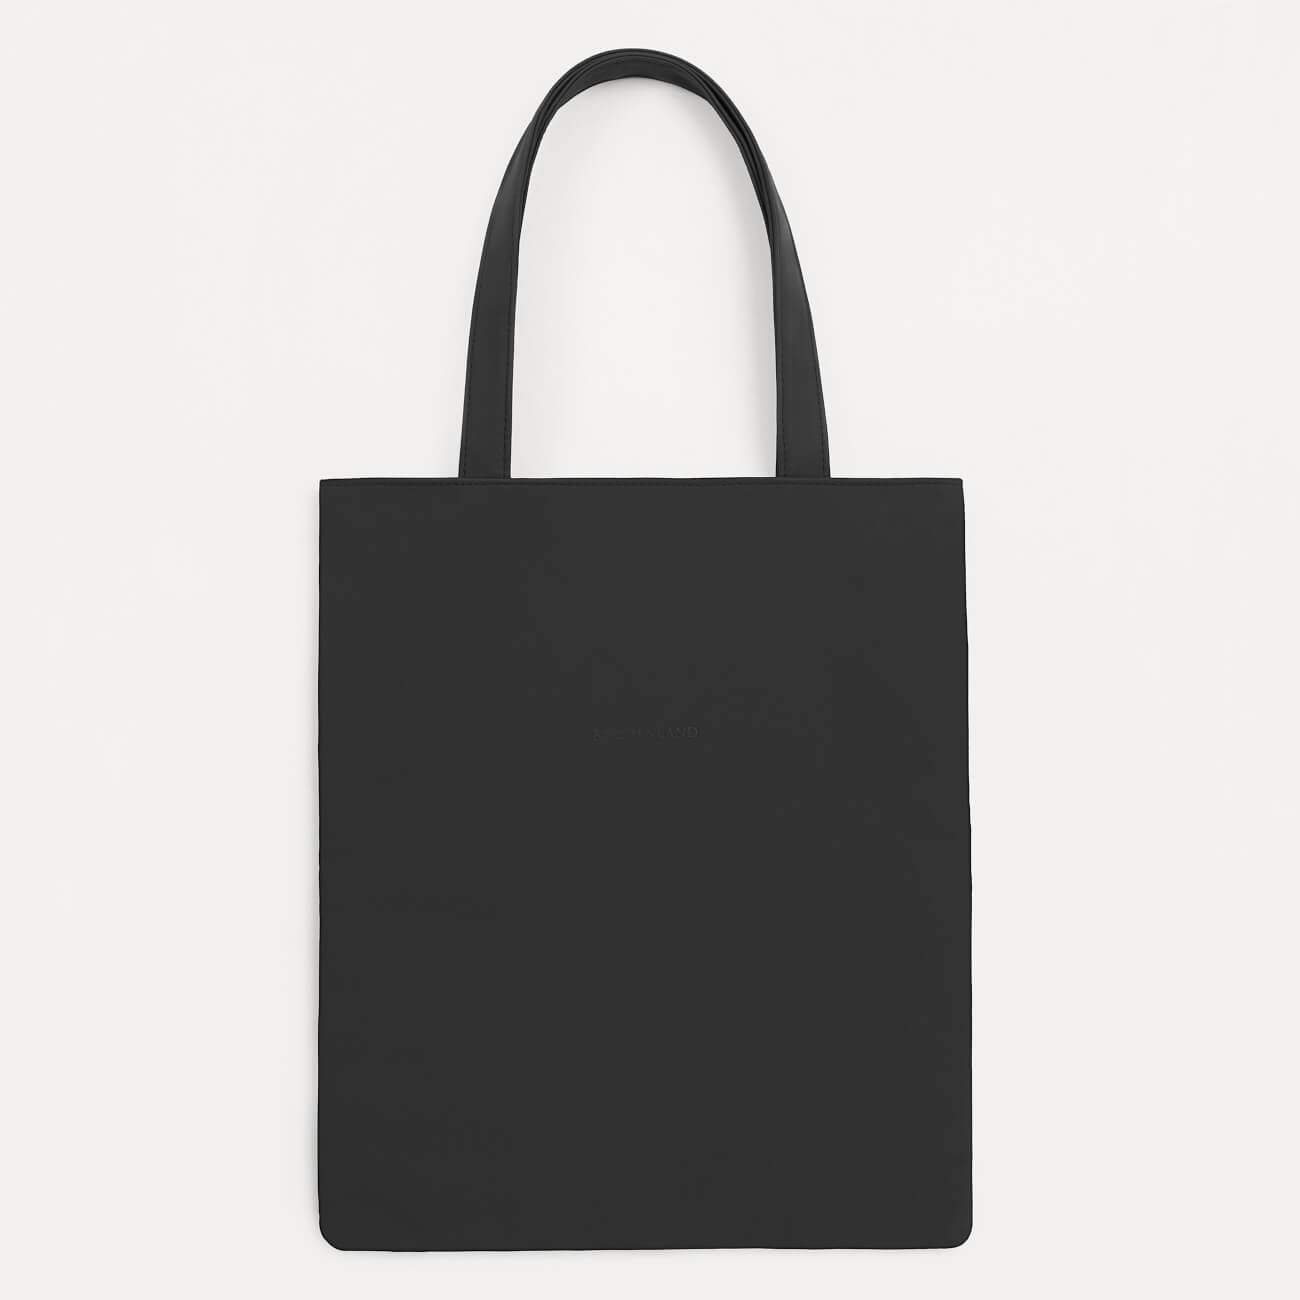 Сумка-шоппер, 37х32 см, полиуретан, черная, Krast сумка текстильная iconik злодейки 31 1 40 5см отдел без молнии без подклада черная